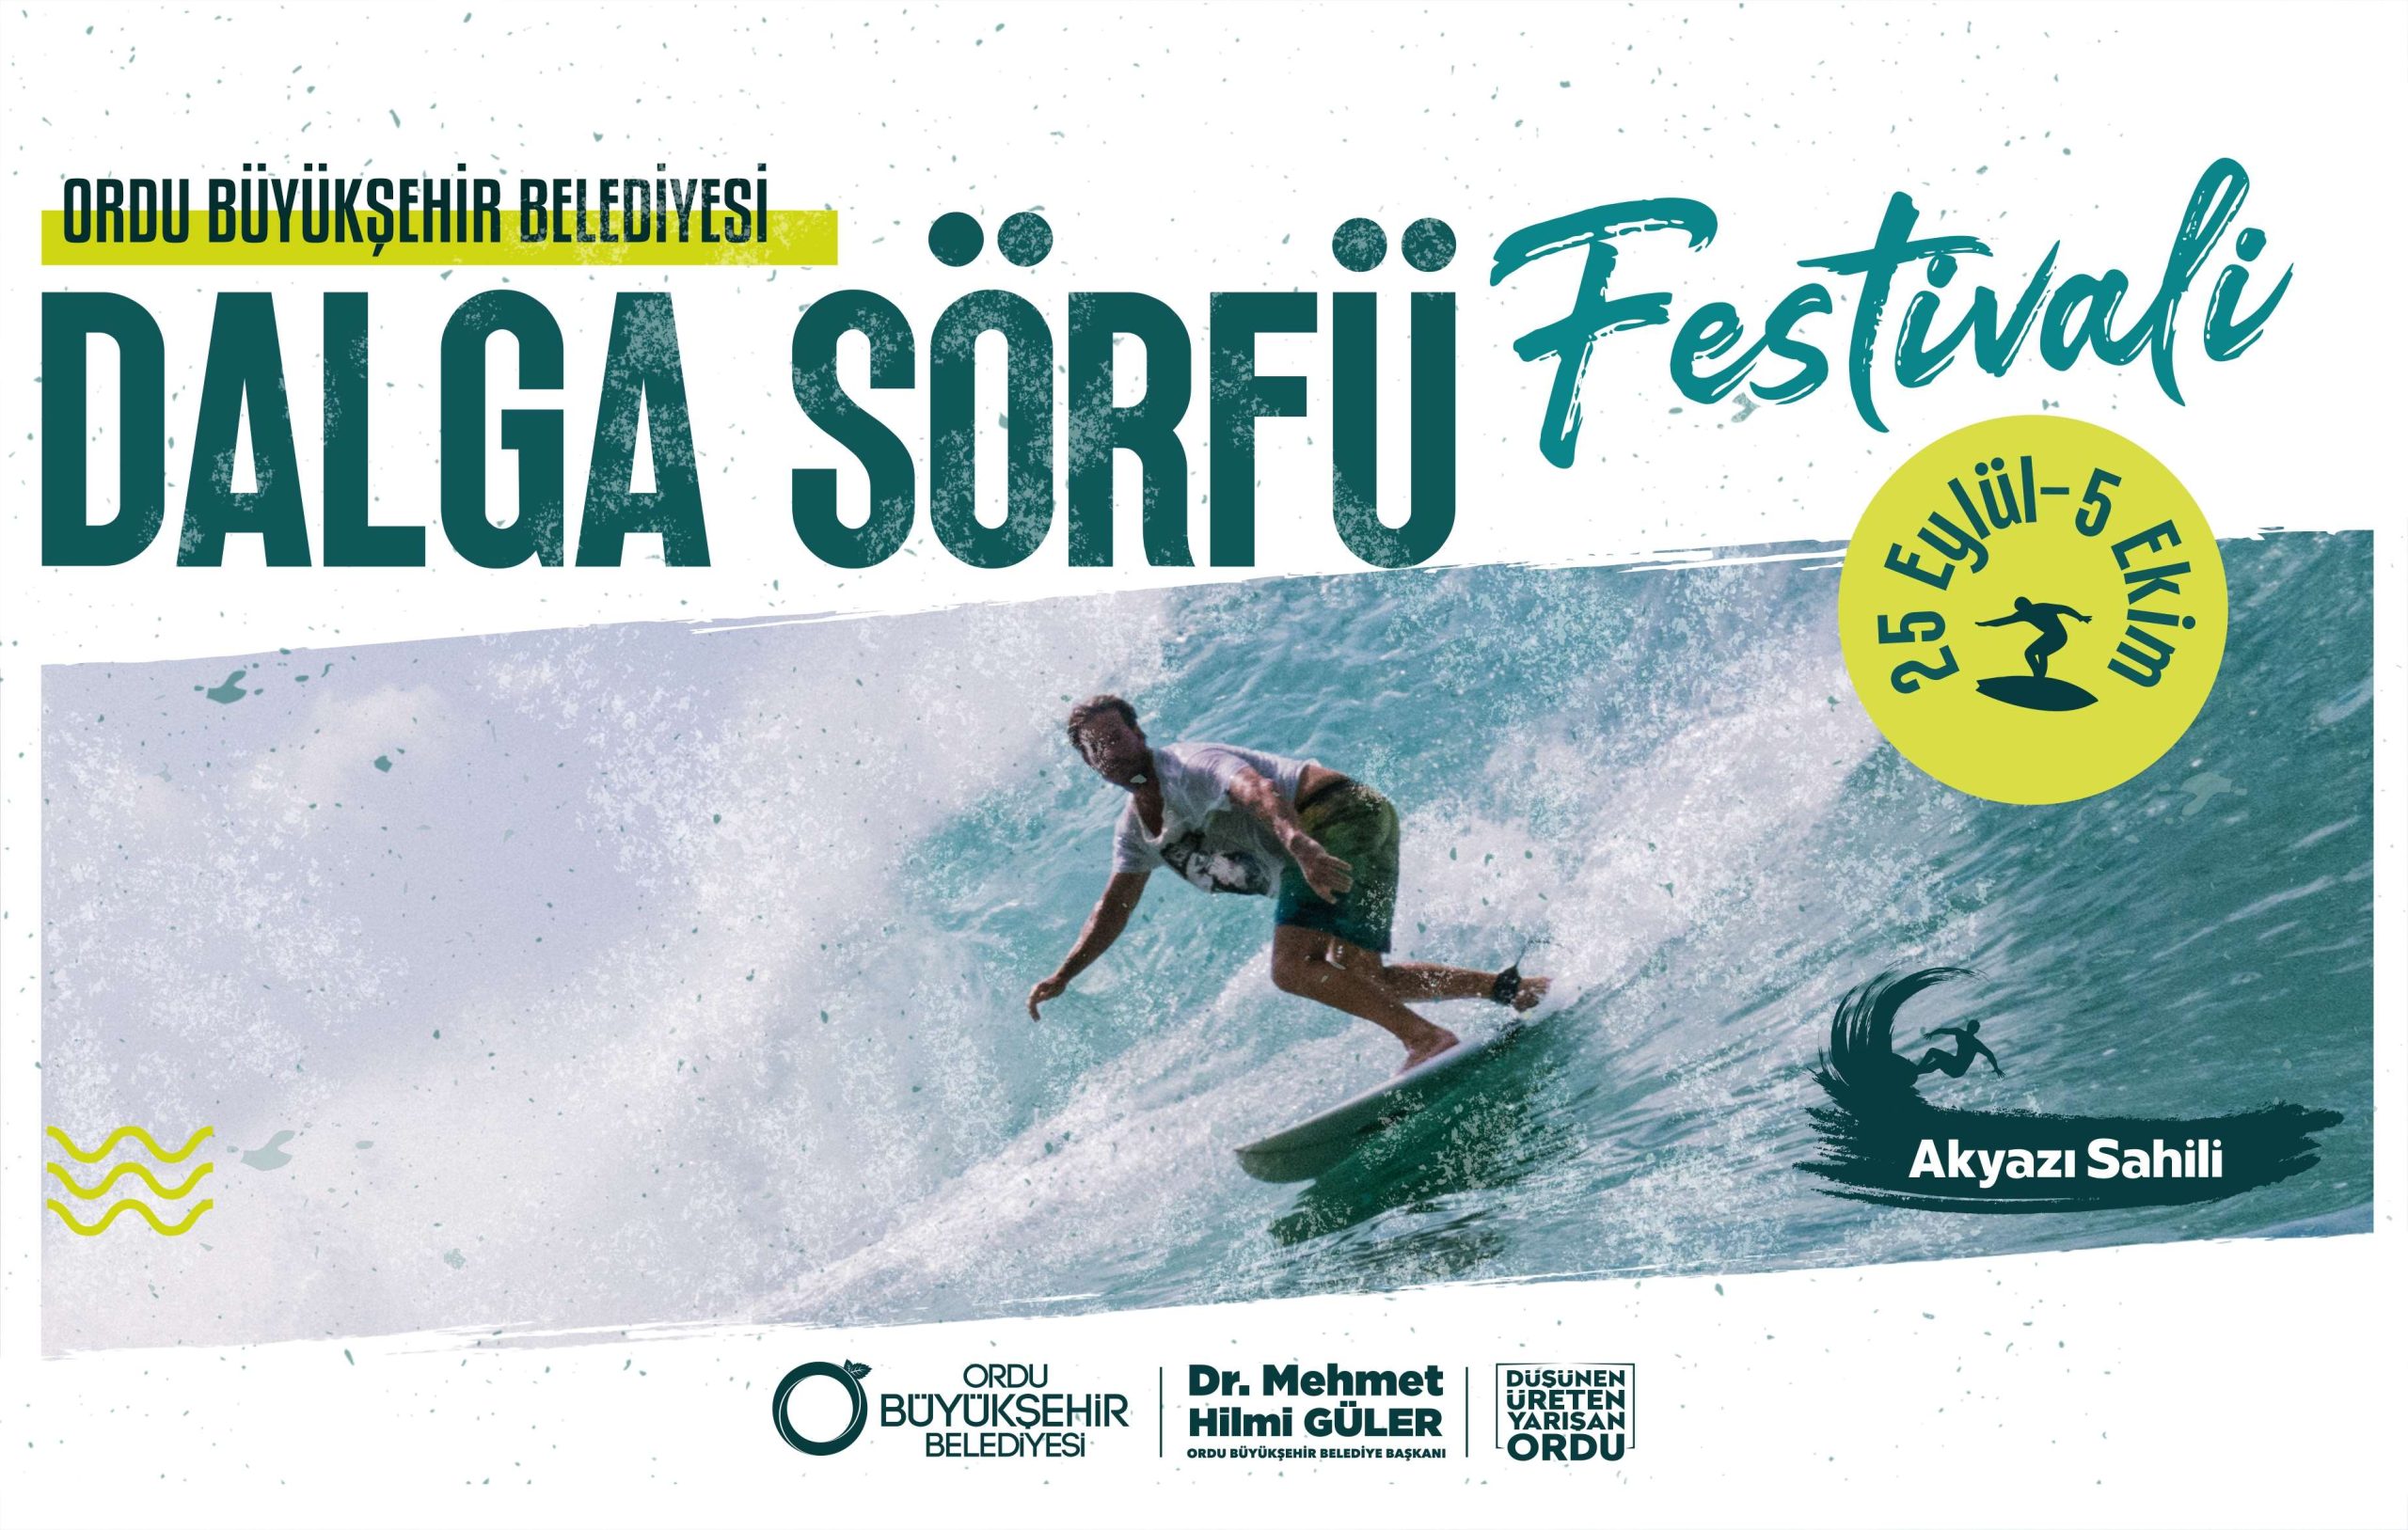  Ordu ‘Dalga Sörfü Festivali’ İçin Son Katılım Pazar Günü